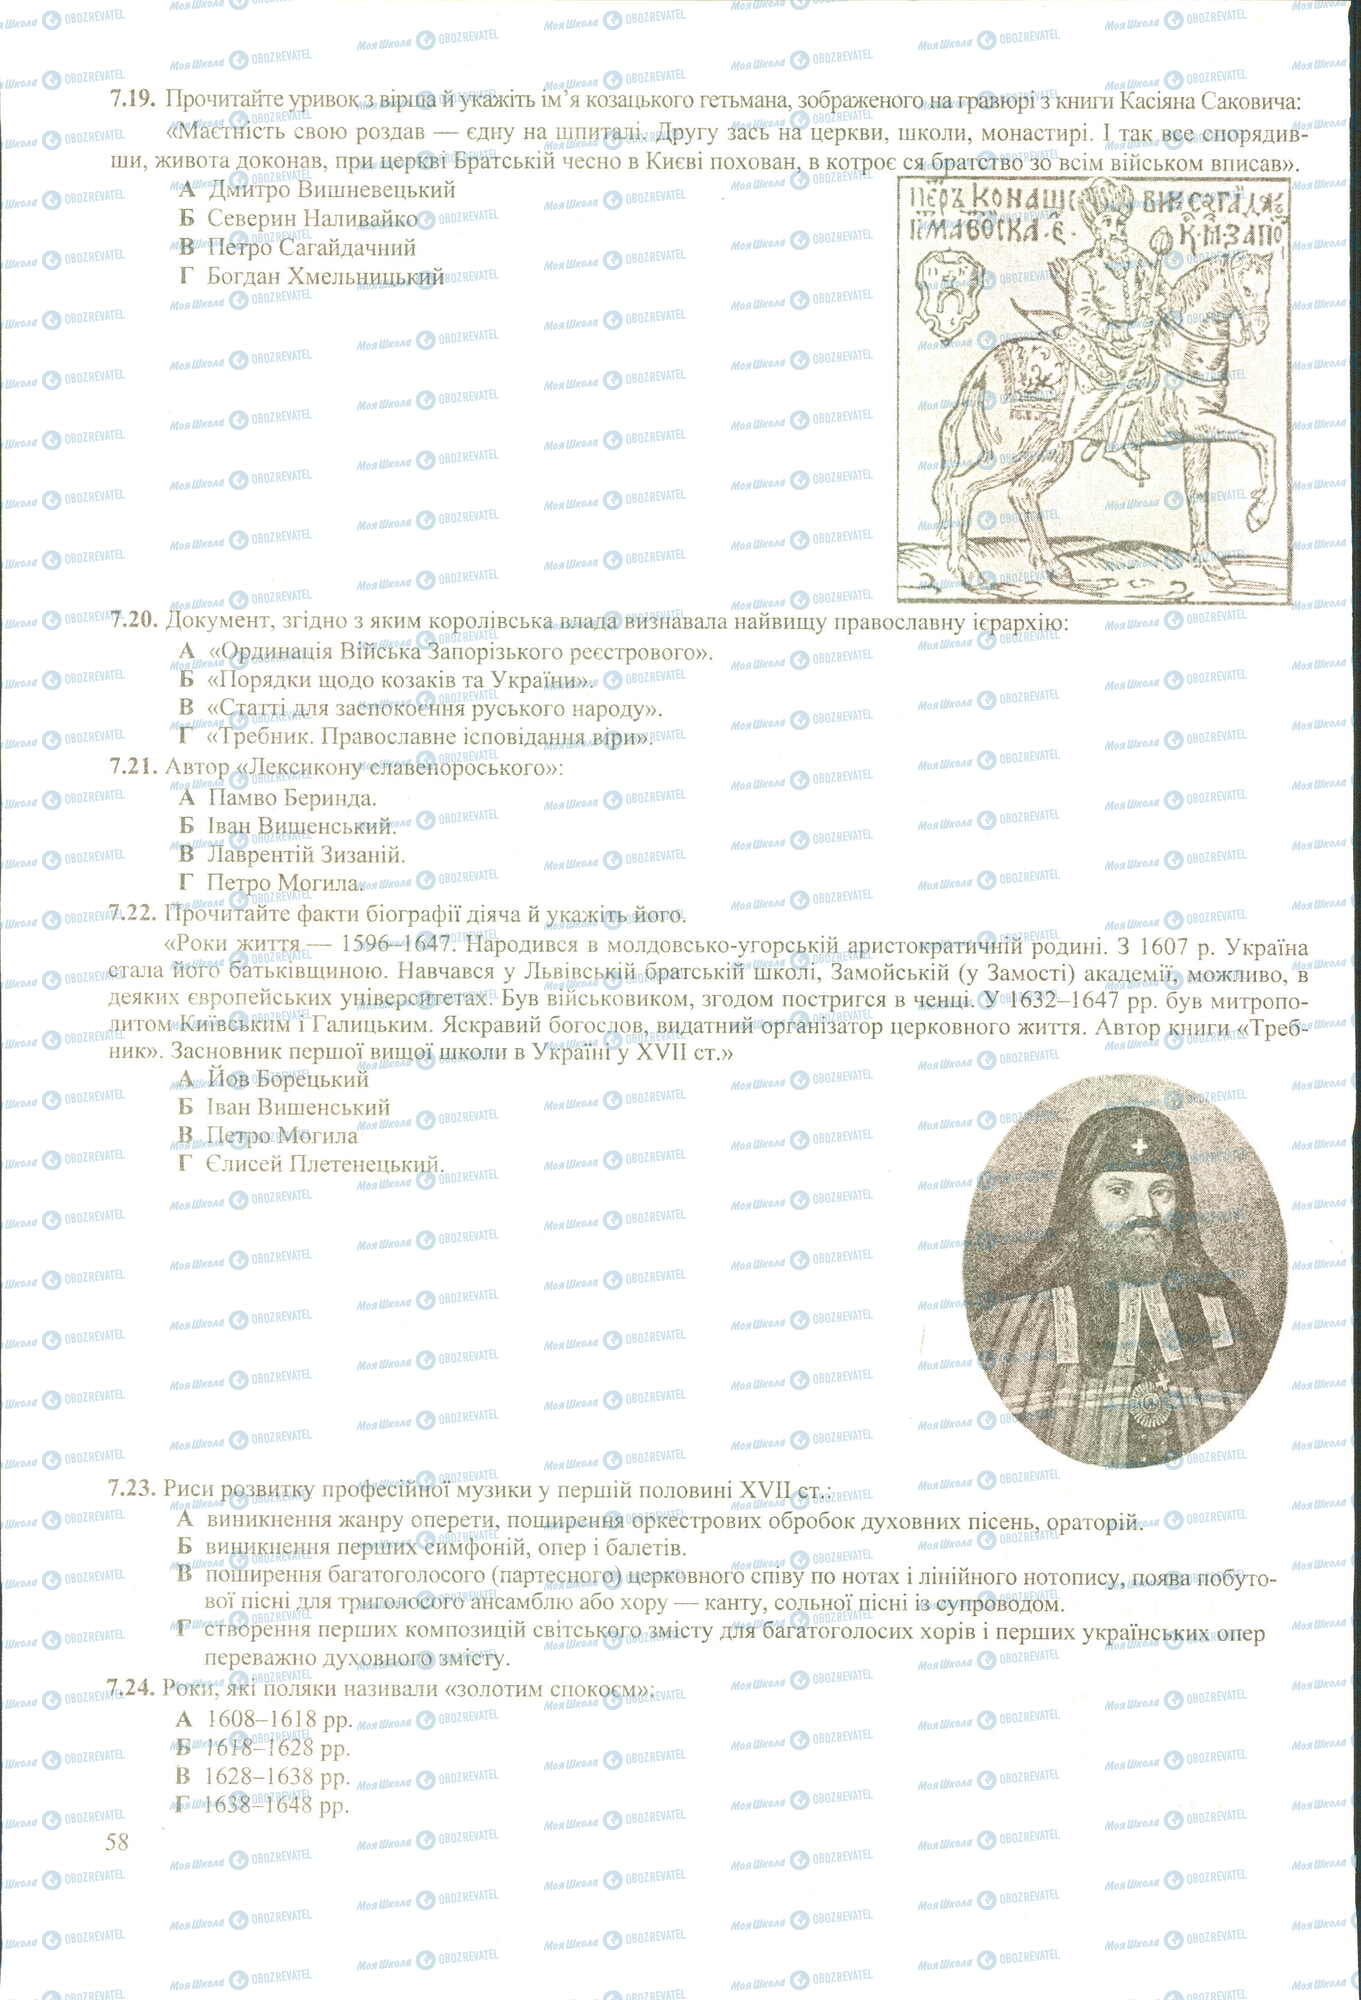 ЗНО История Украины 11 класс страница 7.19-7.24